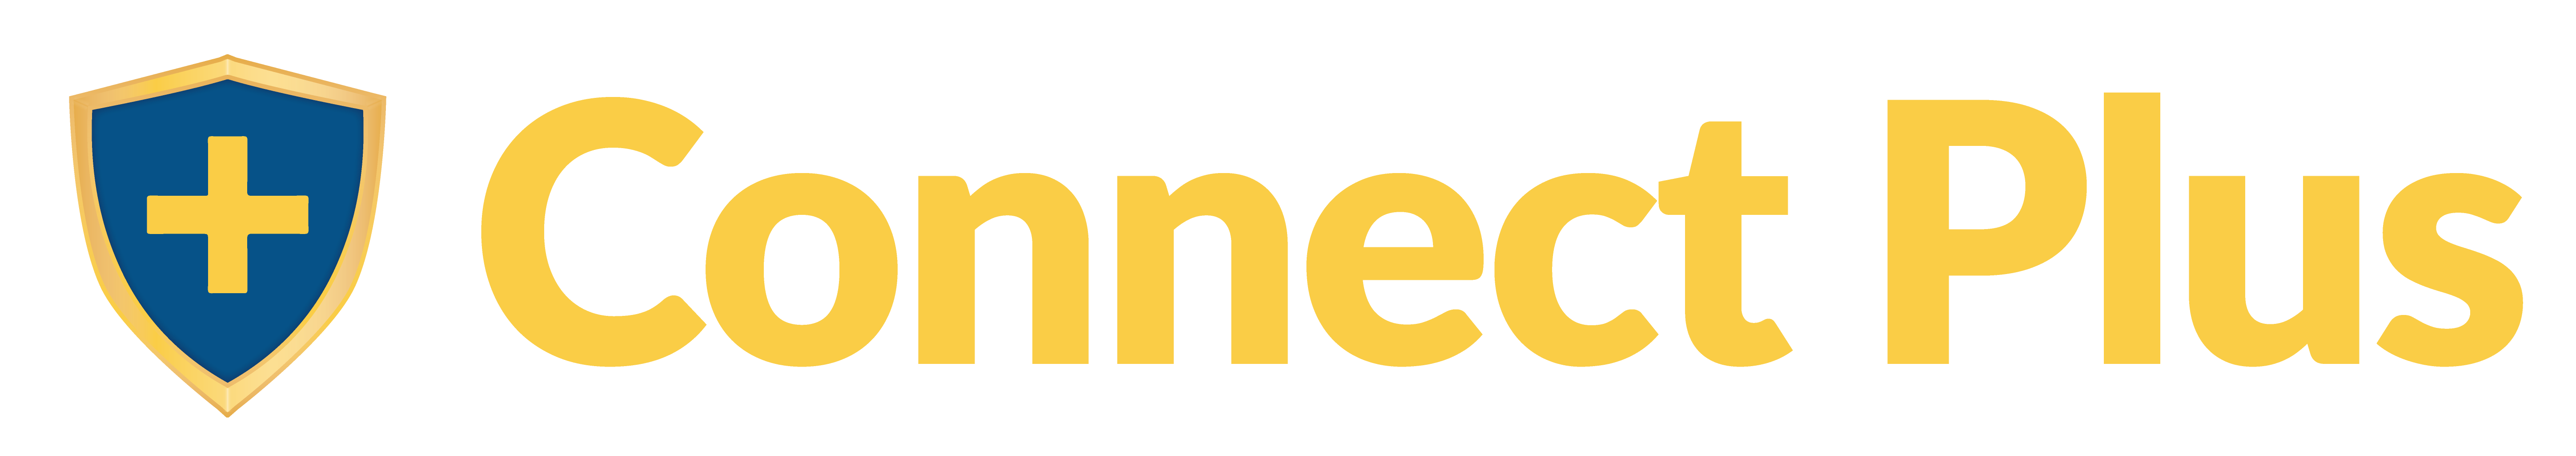 connect-plus-logo